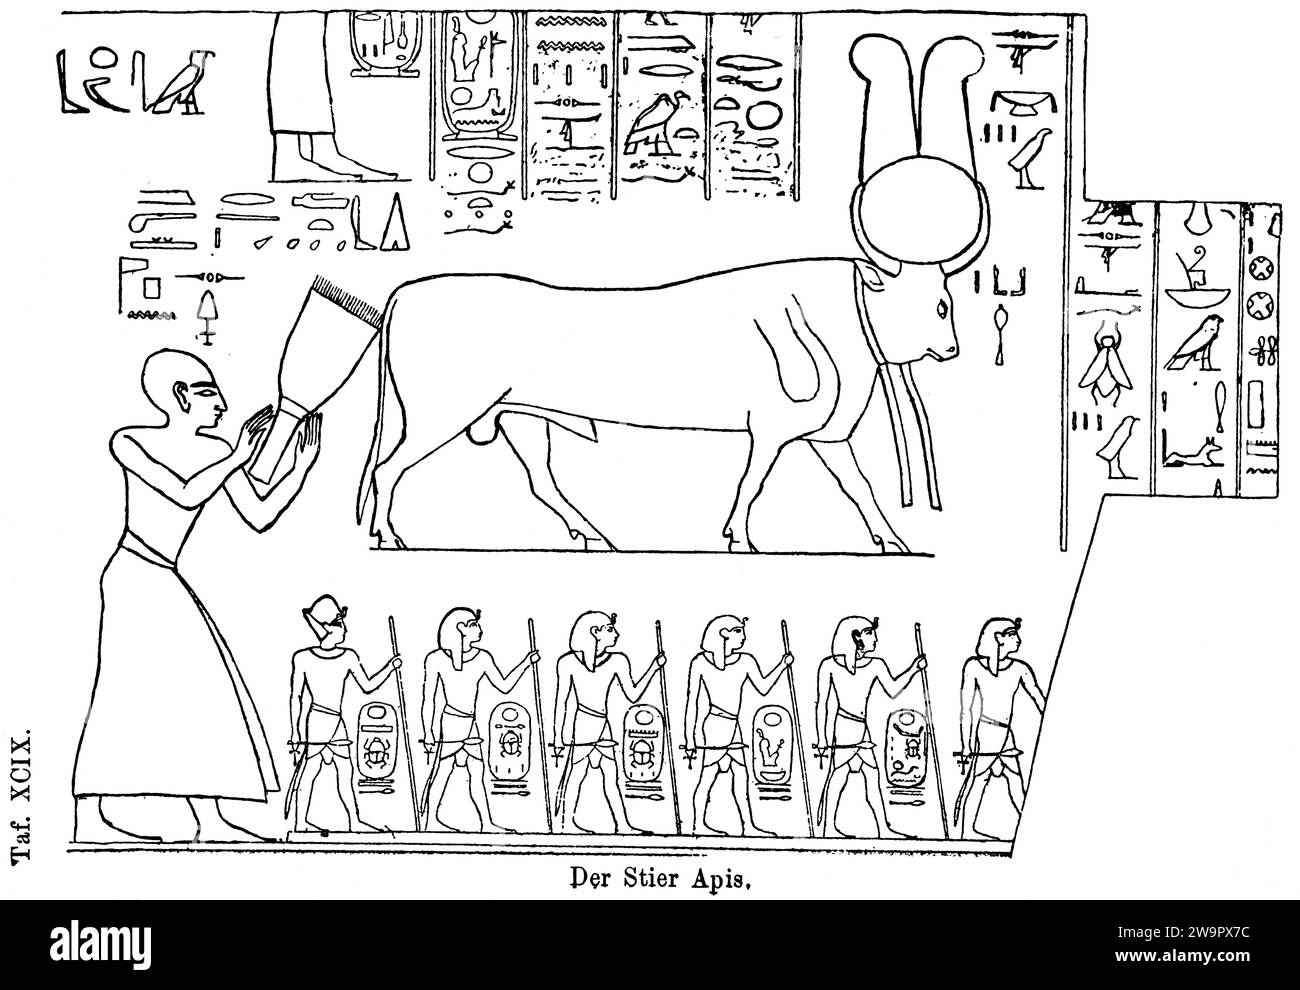 Il toro sacro (Apis) di Menfi, Nilo, basso Egitto, dio egizio della fertilità, disco solare, connessione con il dio del sole Re, geroglifici, antichità Foto Stock